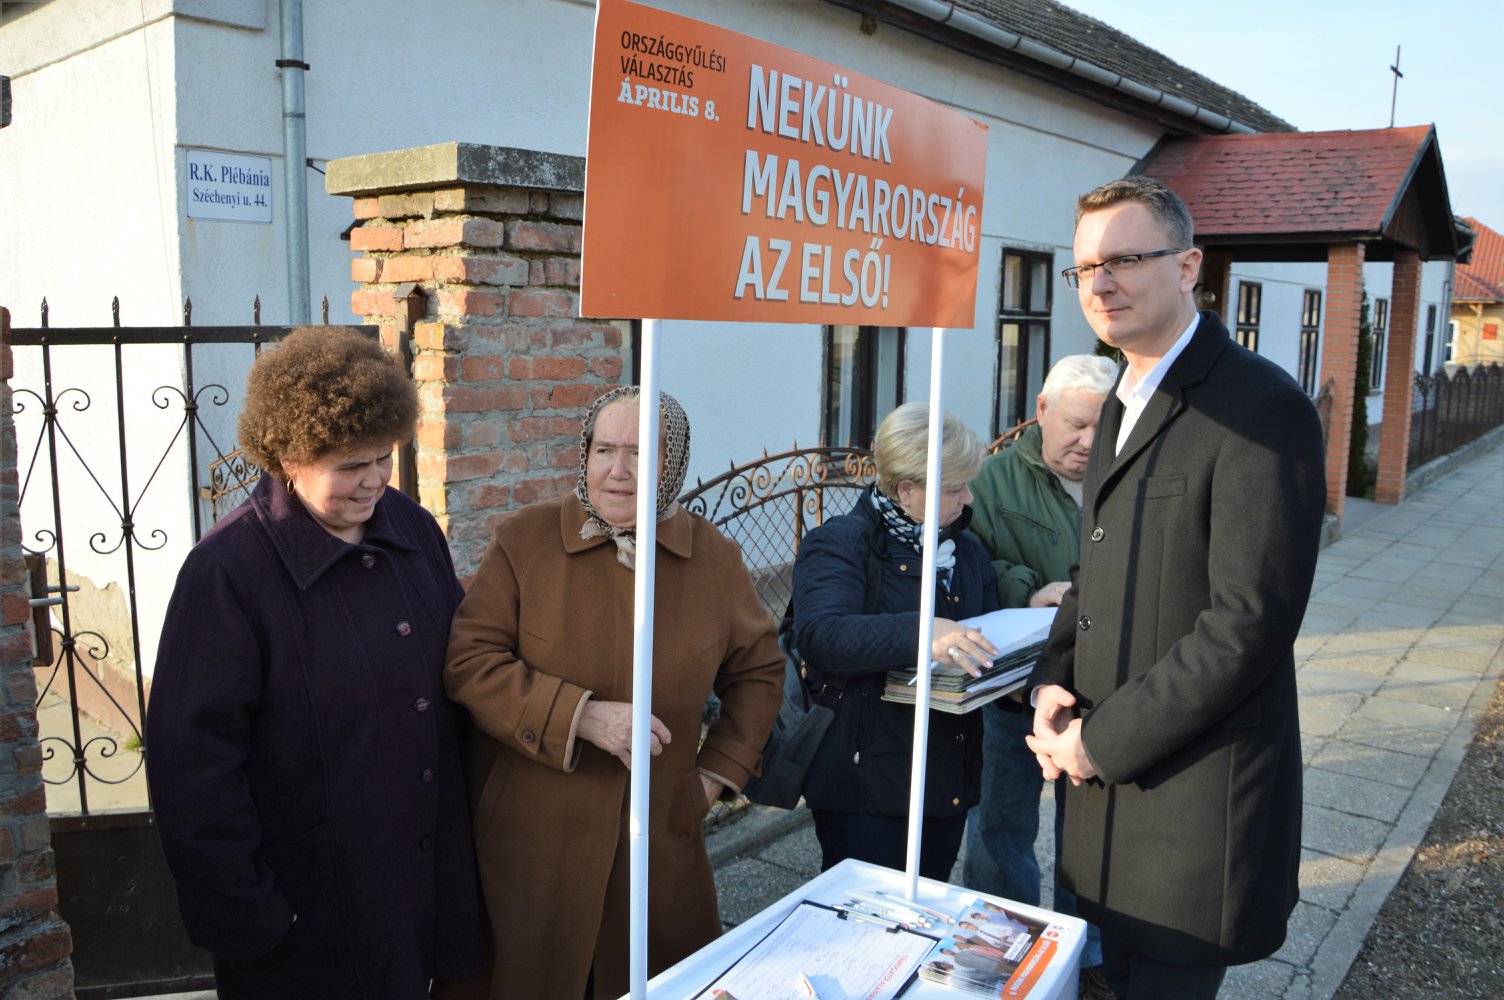 Egy héttel az ajánlásgyűjtés vége után még a KDNP-sek is gyűjtik a Fidesznek a támogatói aláírásokat